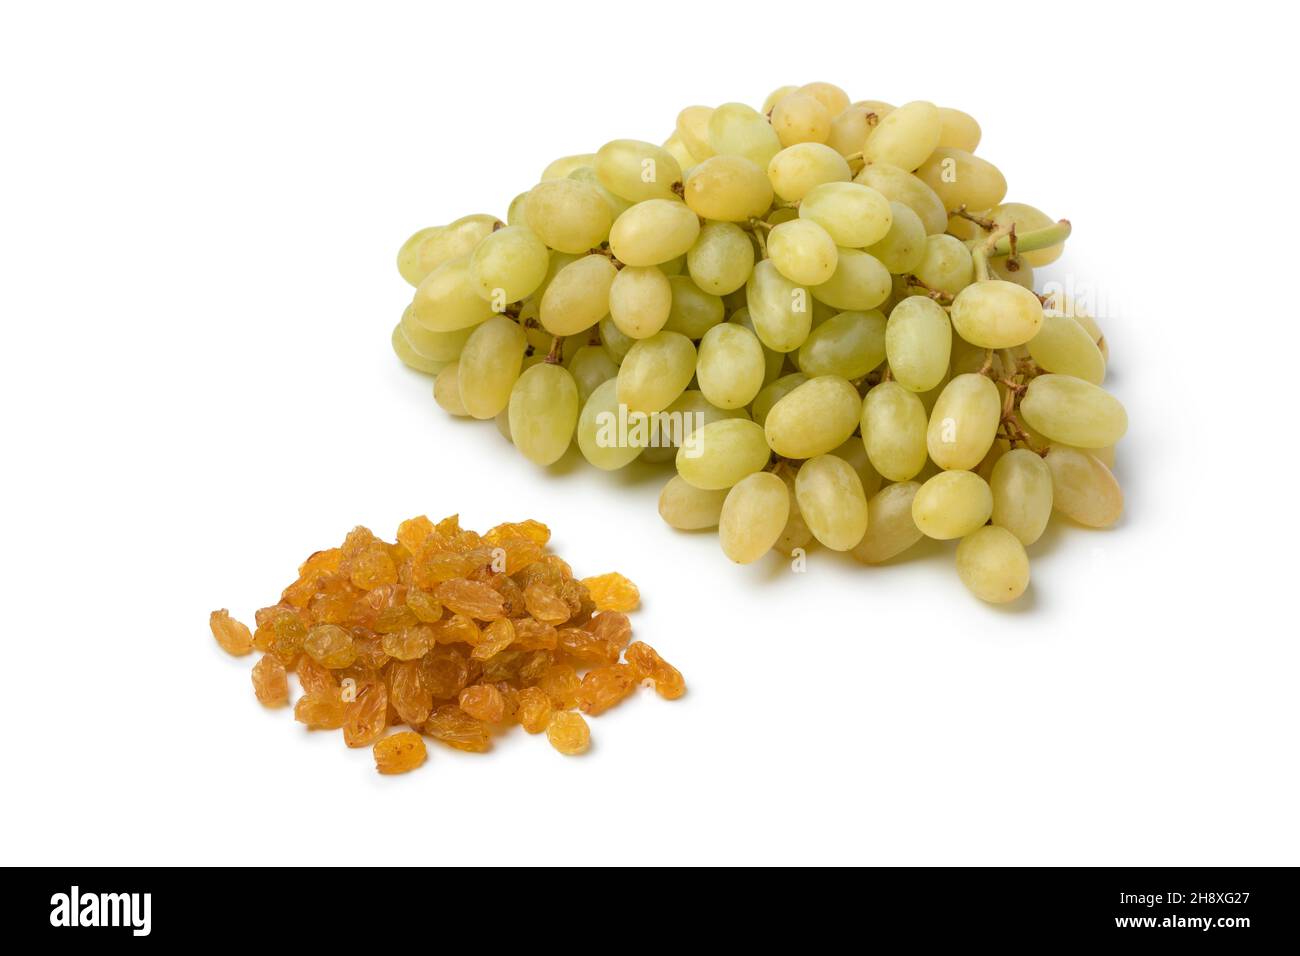 Manojo de uvas sultanas turcas frescas maduras y pasas secas aisladas sobre fondo blanco Foto de stock